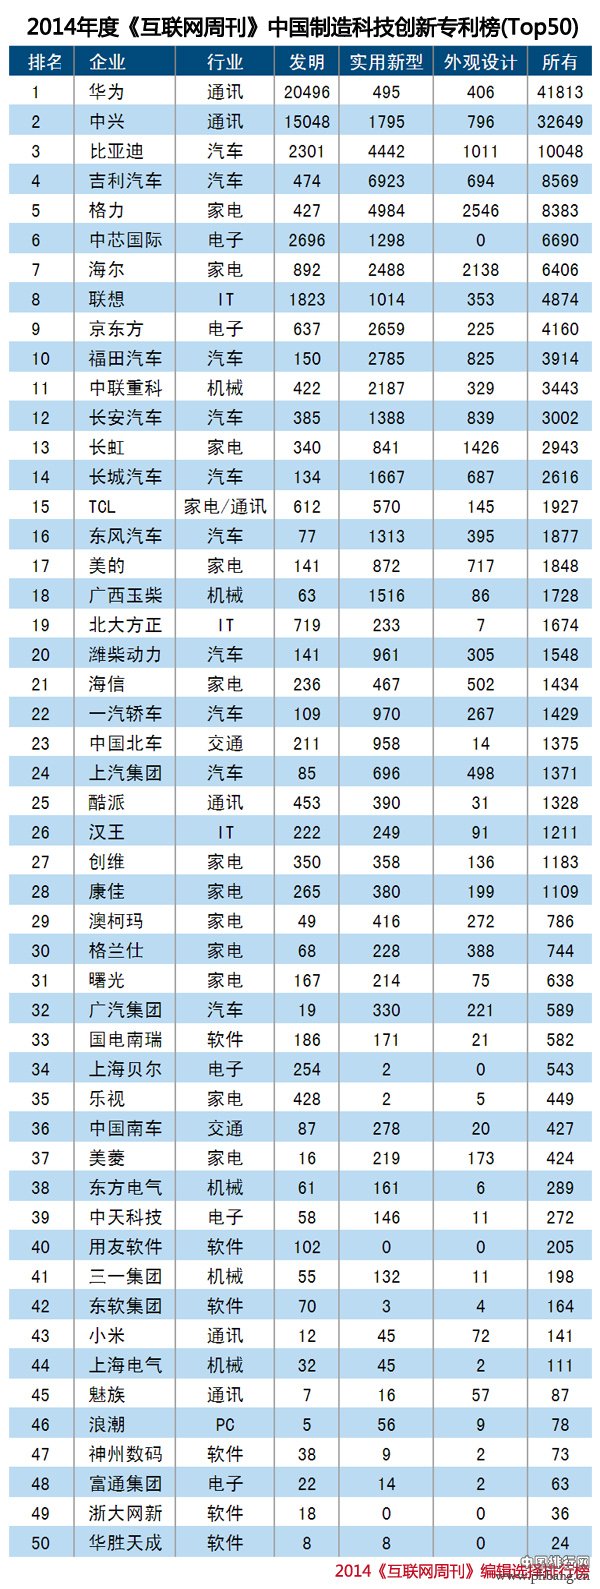 2014中国制造科技创新企业专利排行榜TOP50